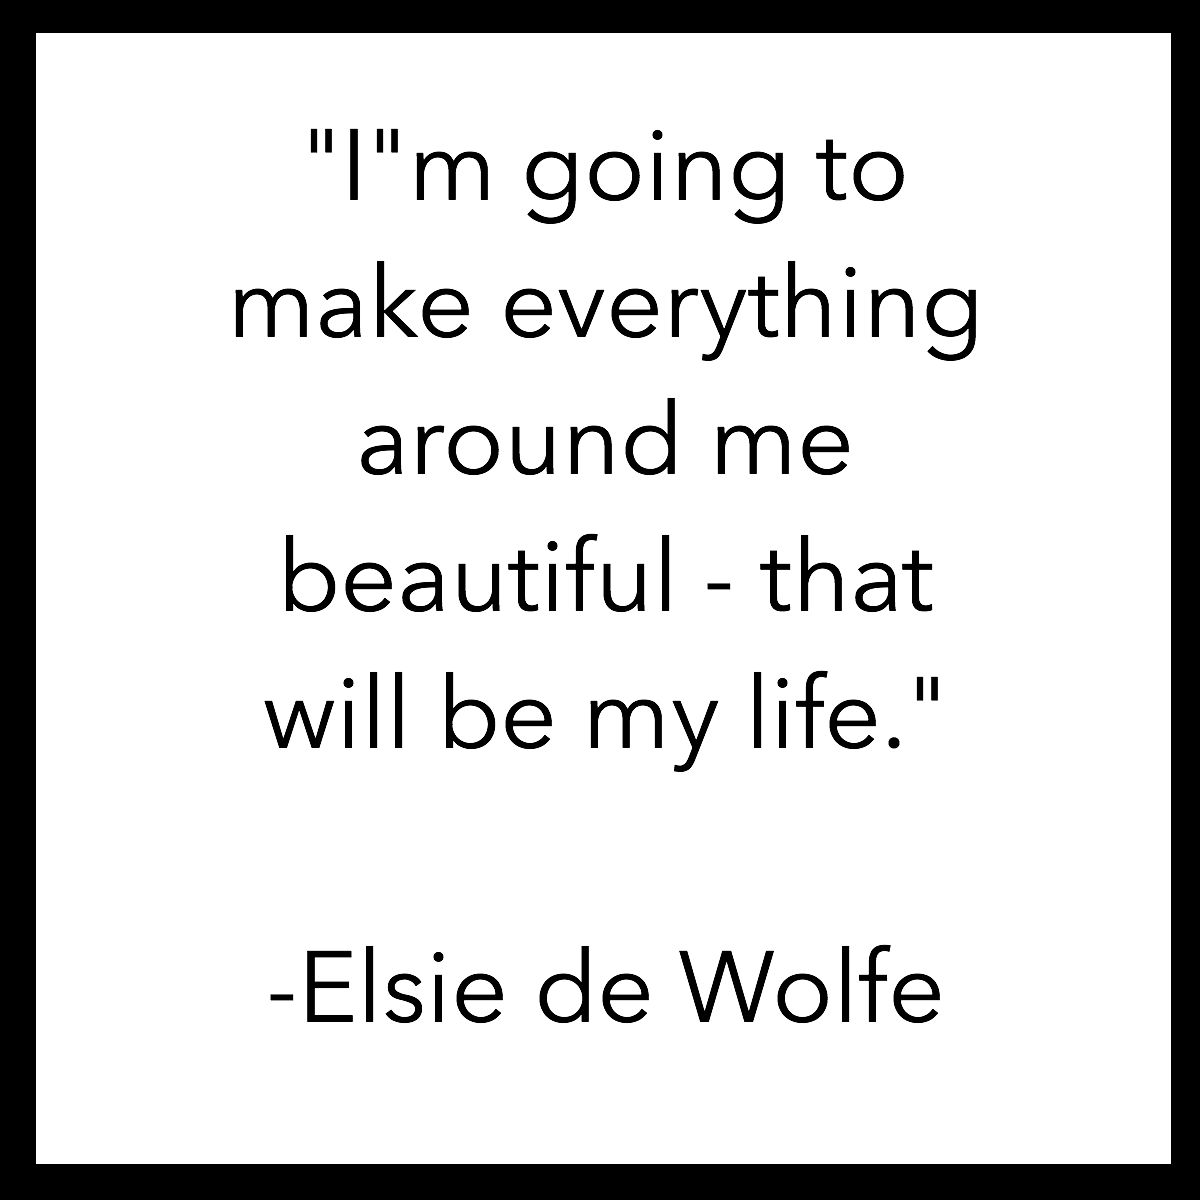 Elise de Wolfe